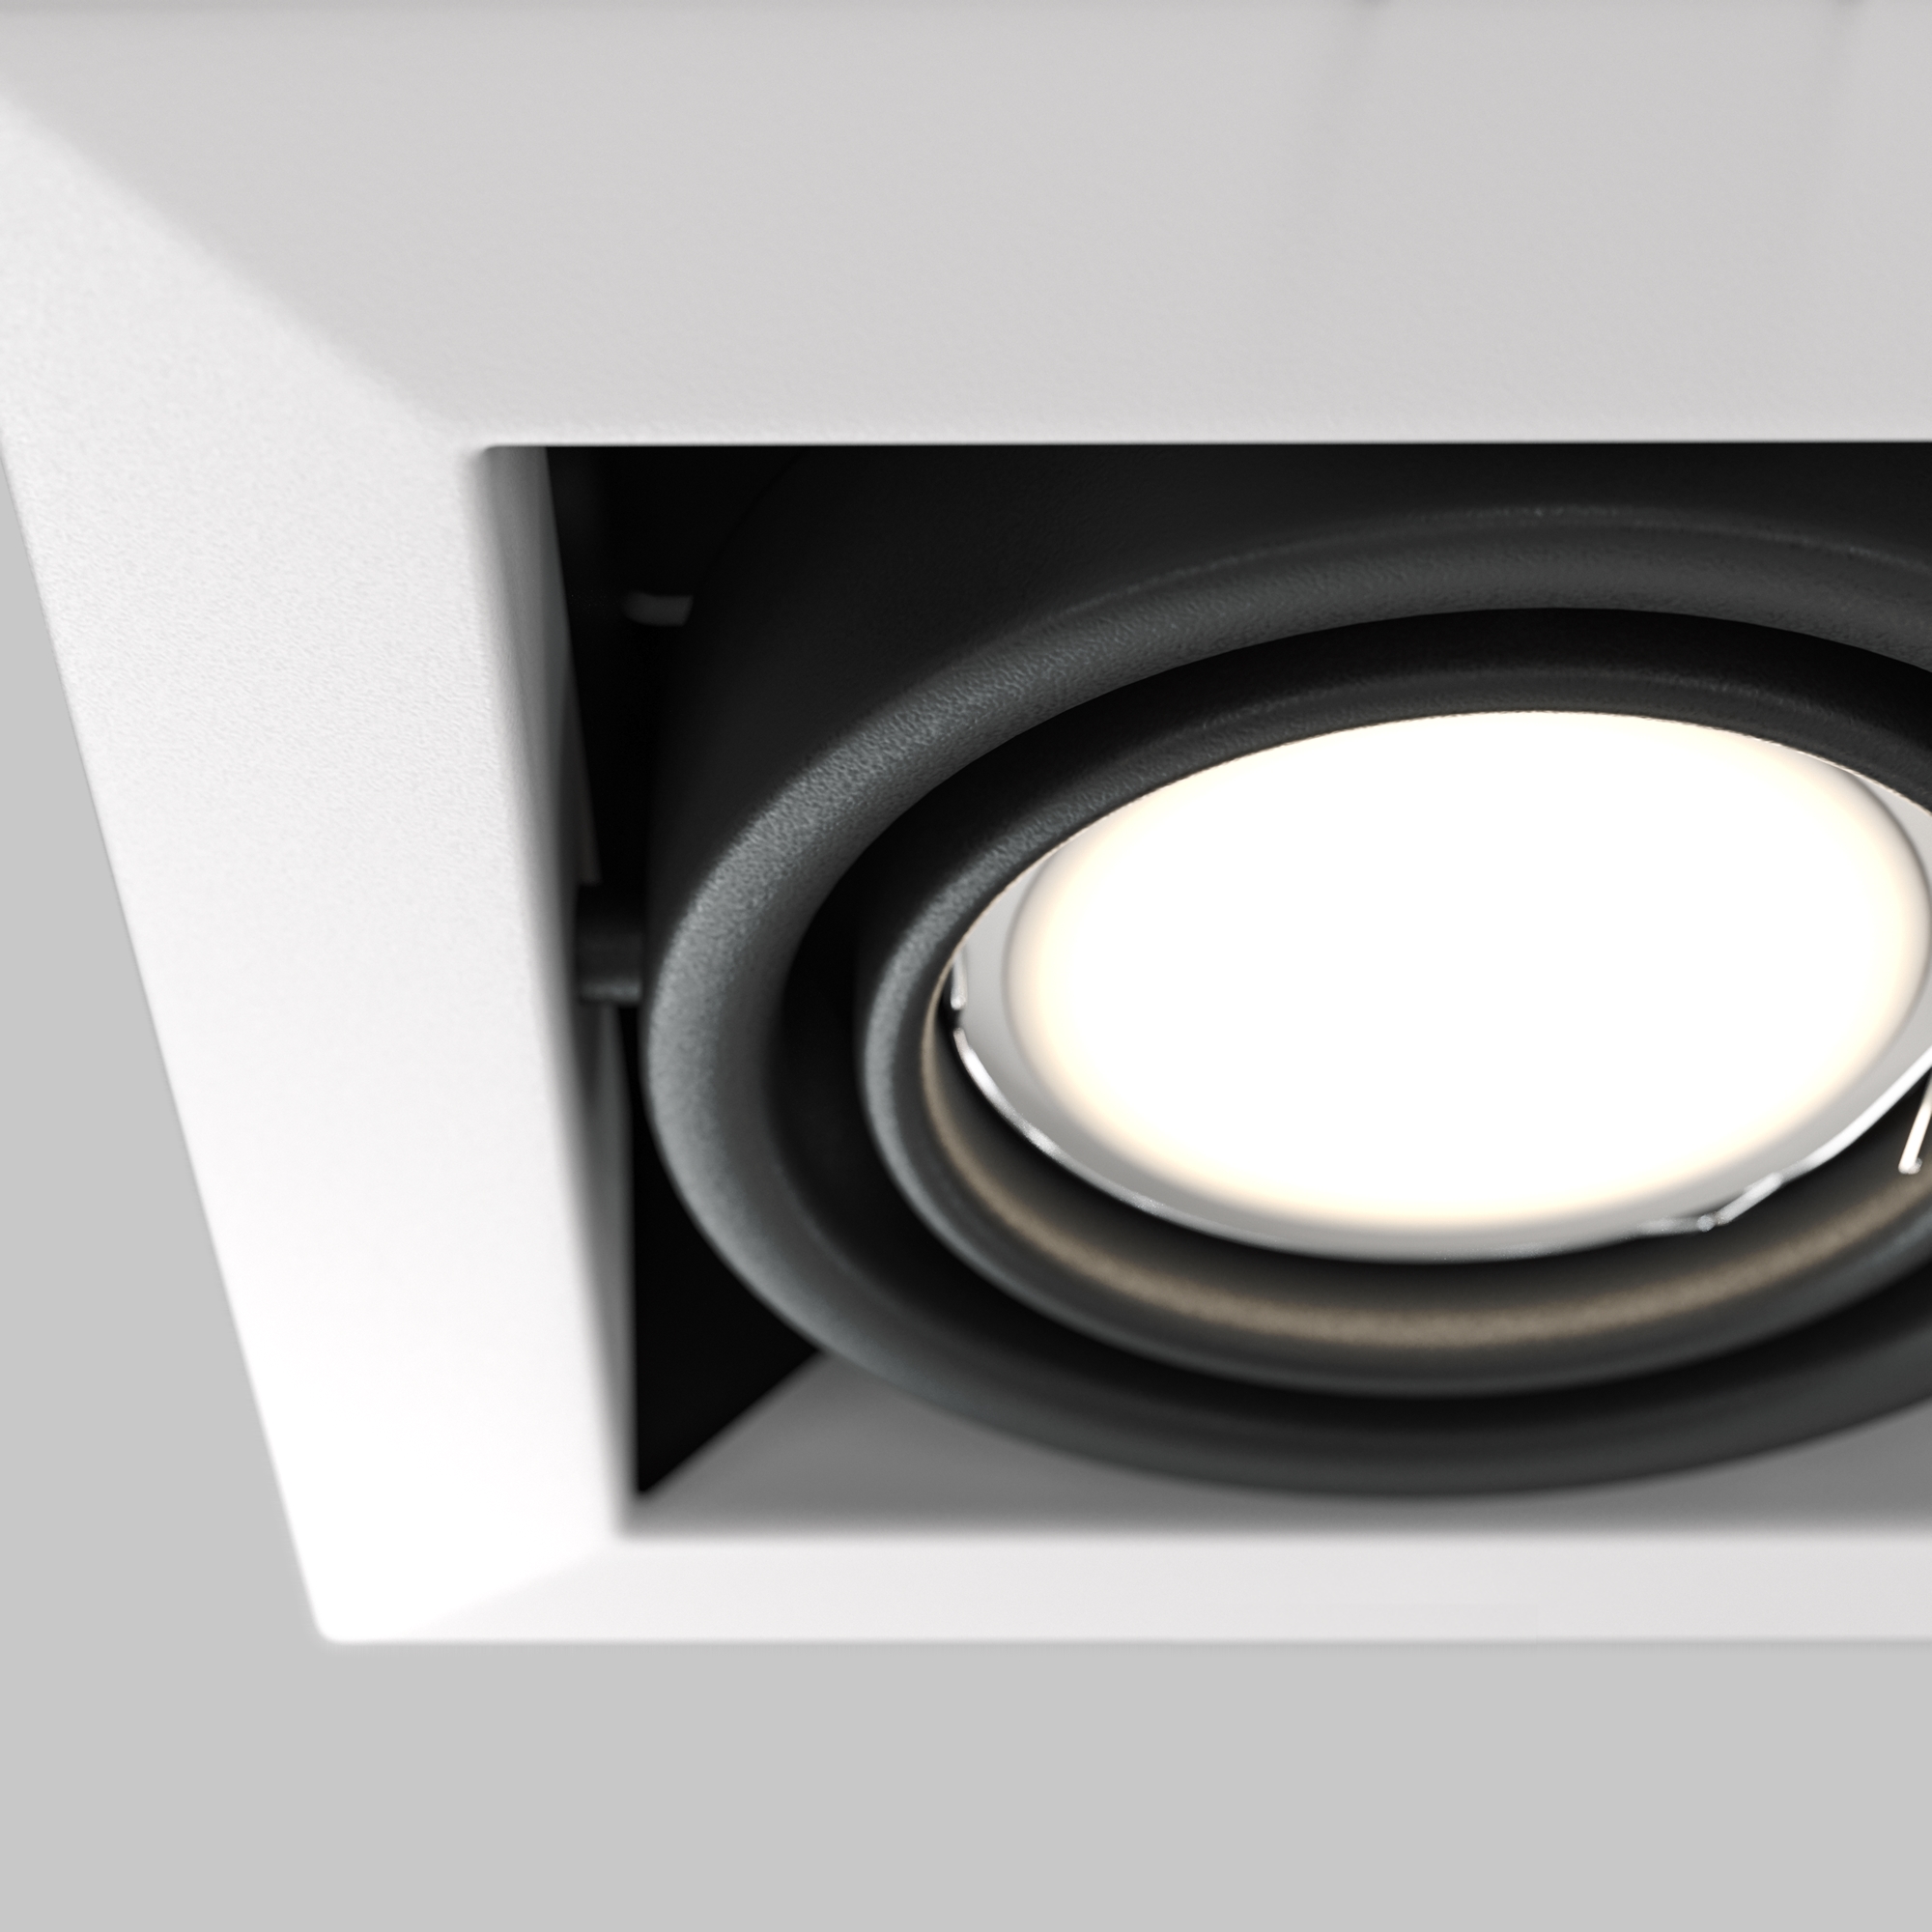 Встраиваемый светильник Technical DL008-2-01-W